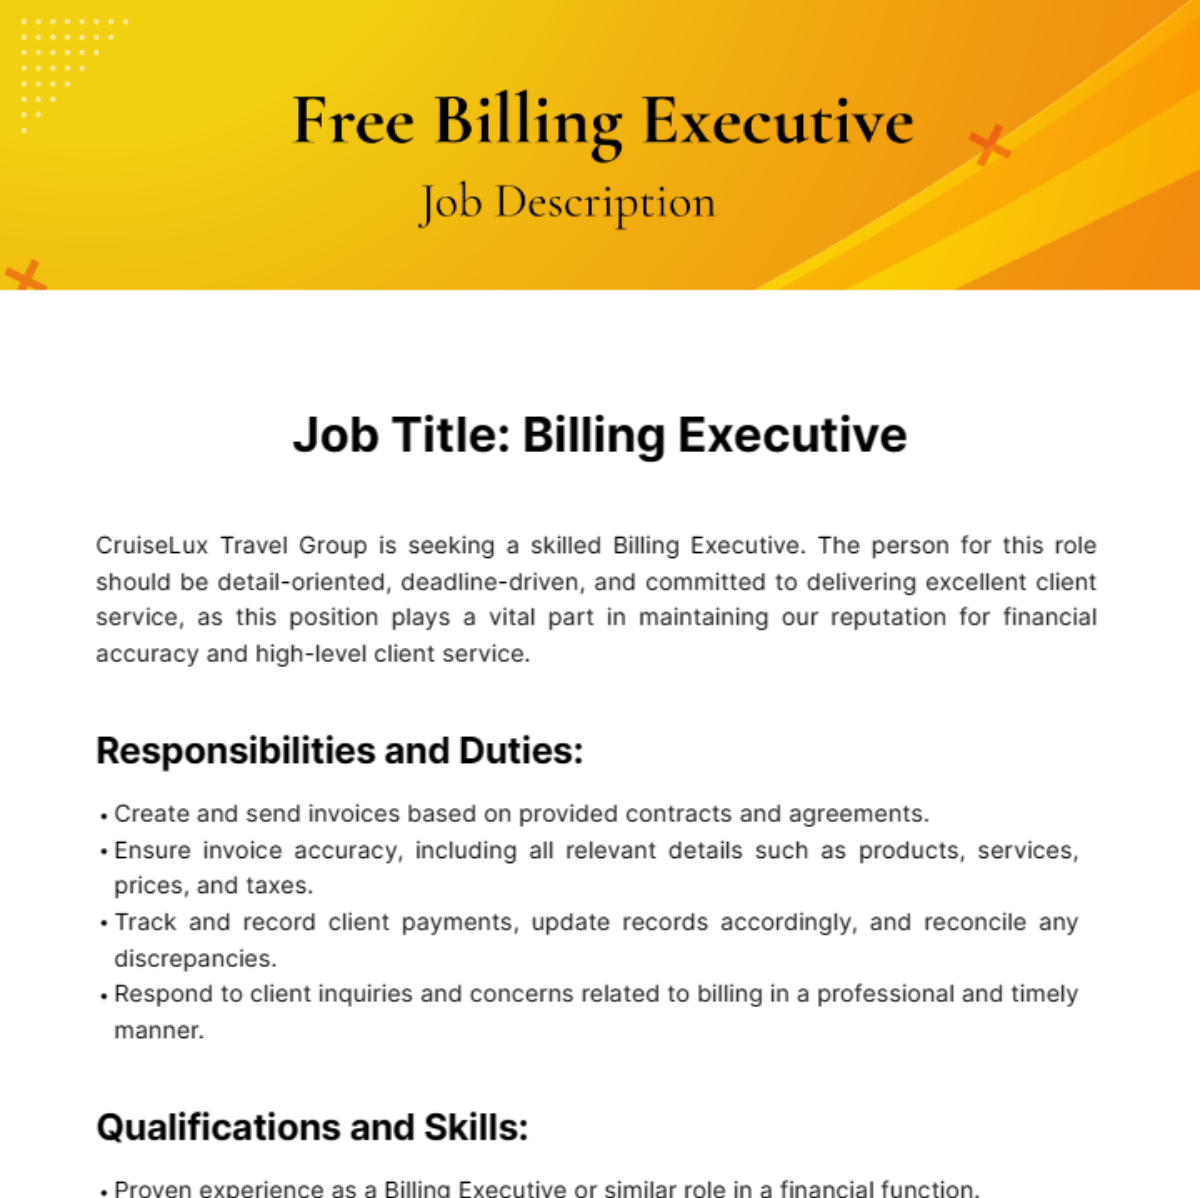 Free Billing Executive Job Description Template